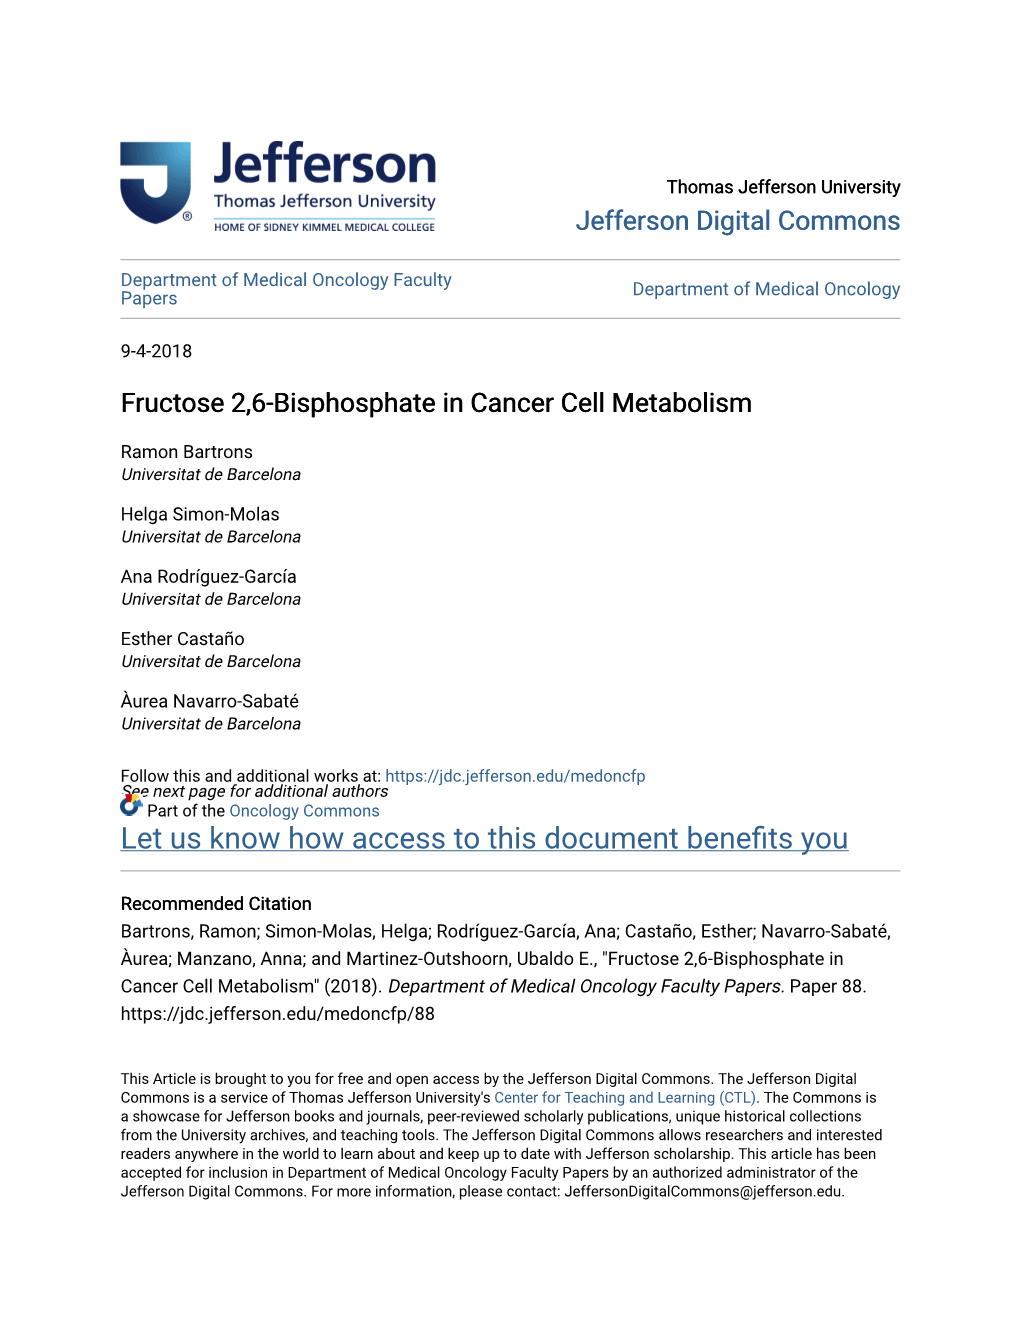 Fructose 2,6-Bisphosphate in Cancer Cell Metabolism